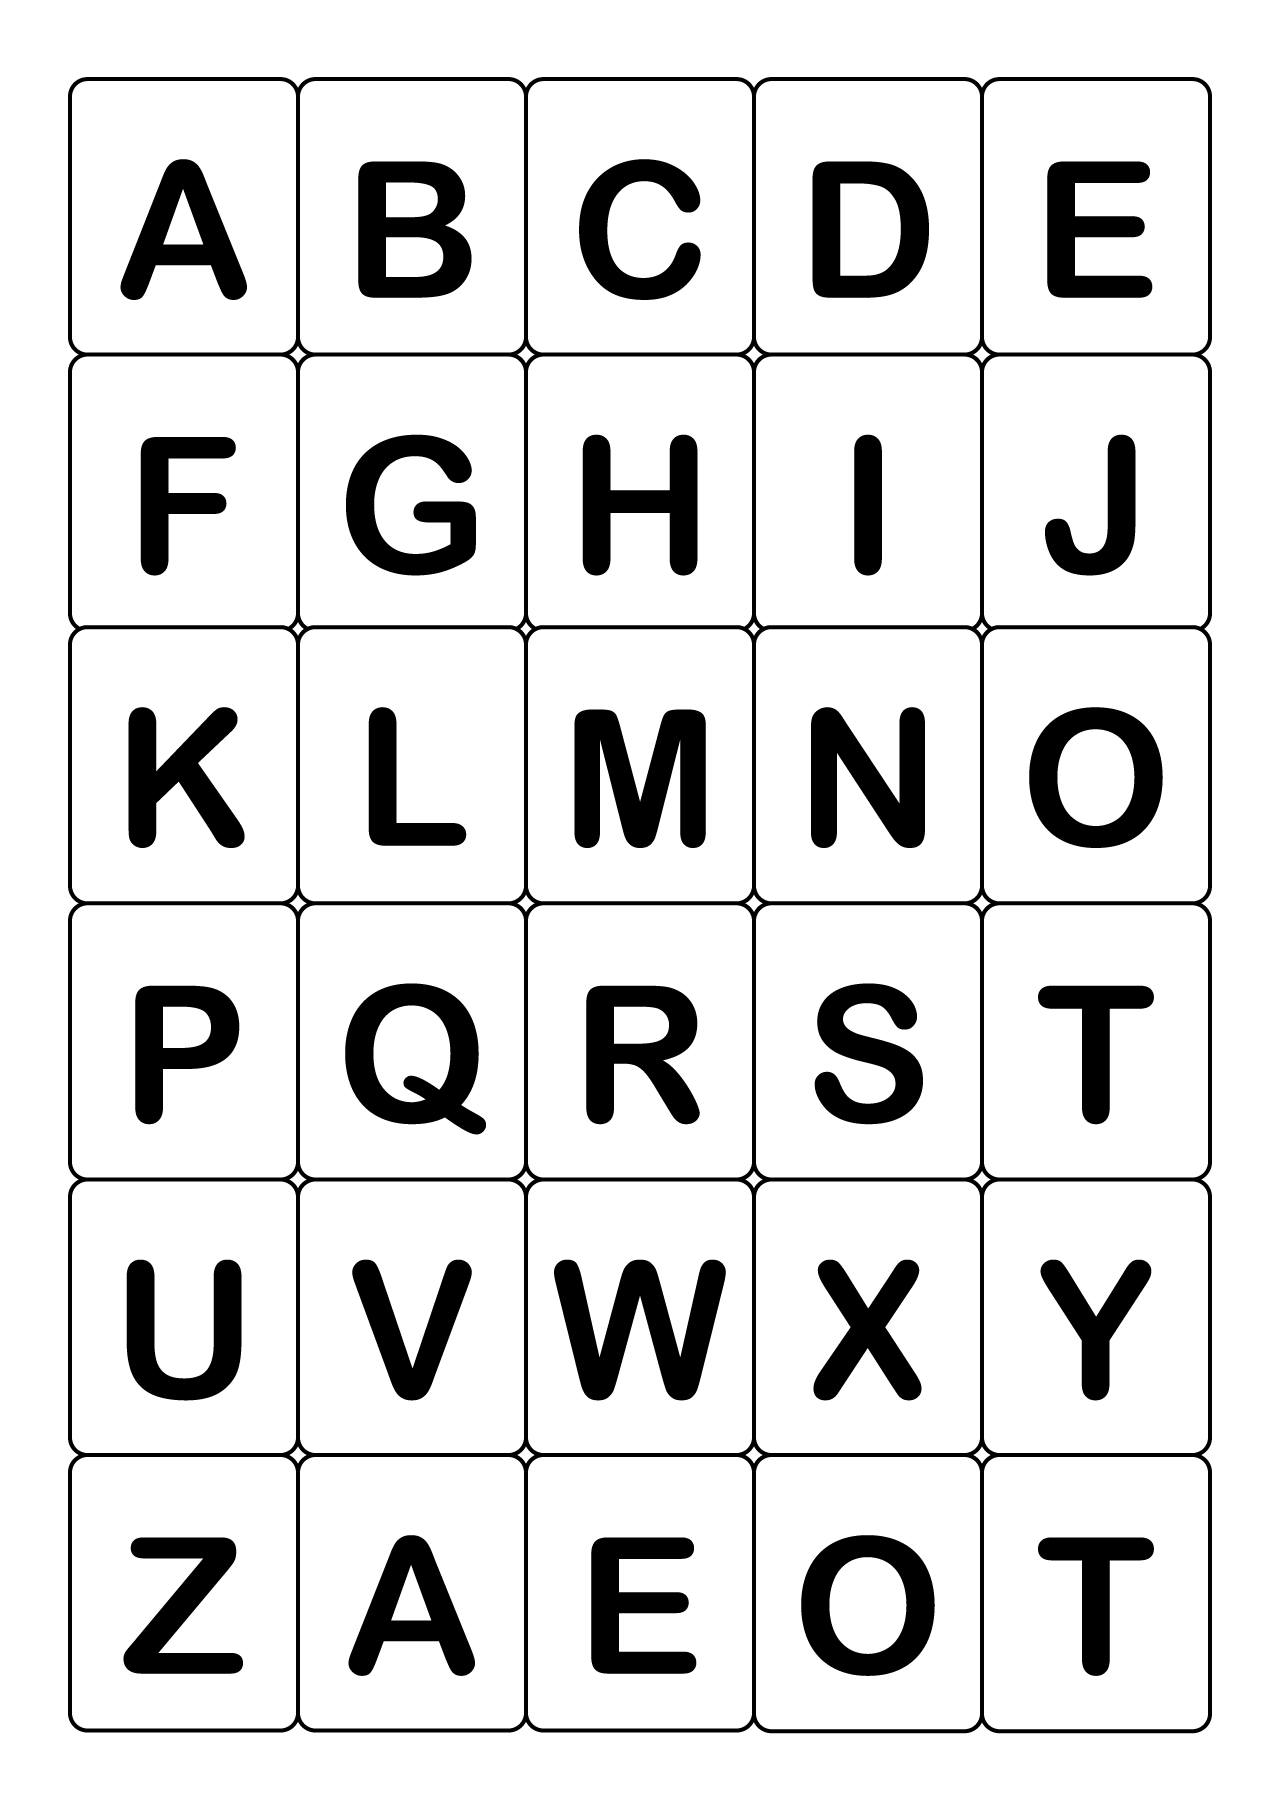 Abc 英語アルファベットカード 大文字 の無料イラスト素材 イラストイメージ